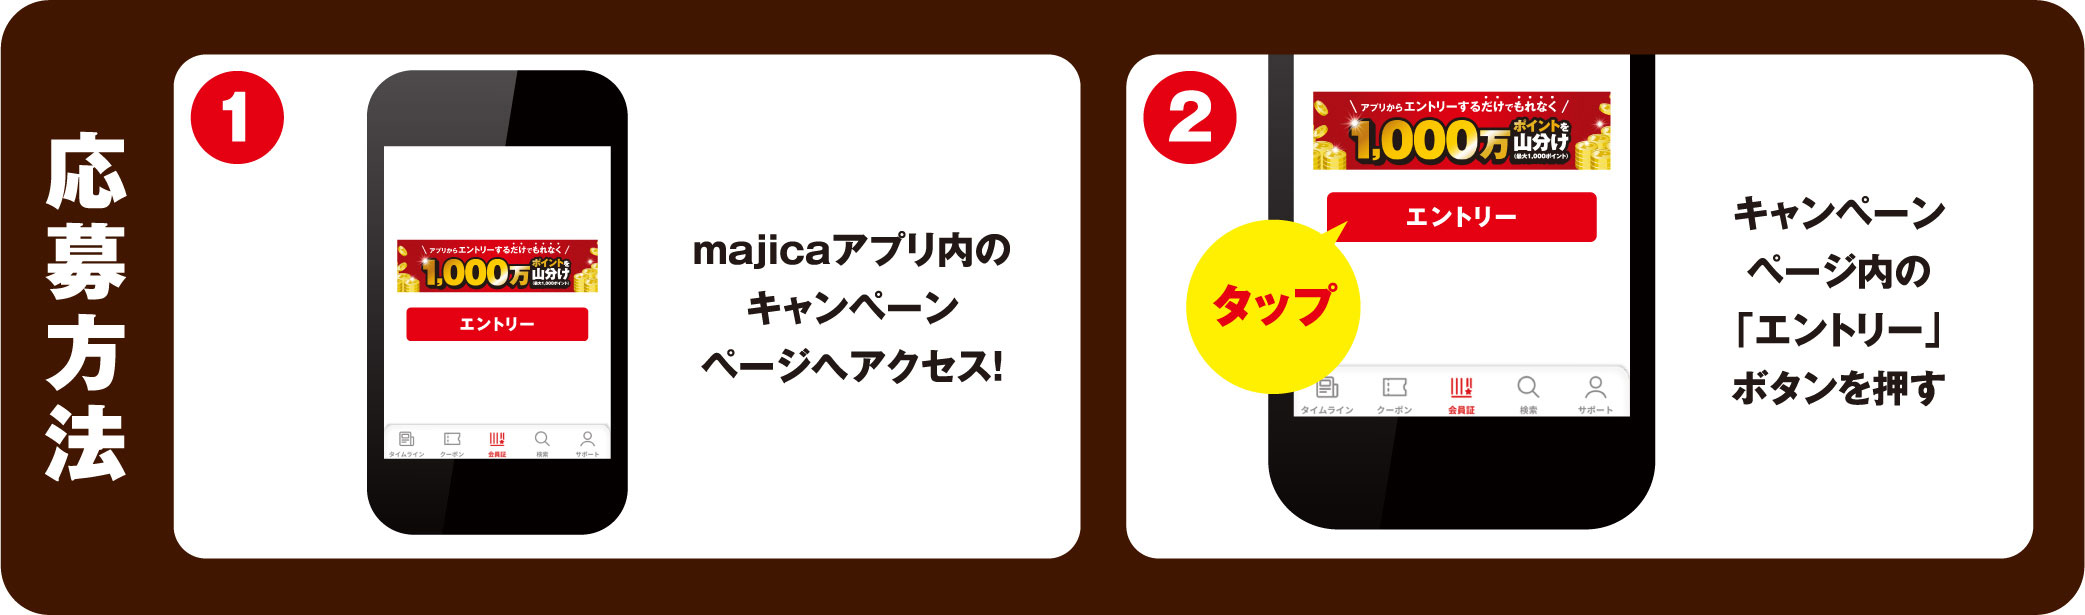 1.majicaアプリ内のキャンペーンページへアクセス！／2.キャンペーンページ内の「エントリー」ボタンを押す